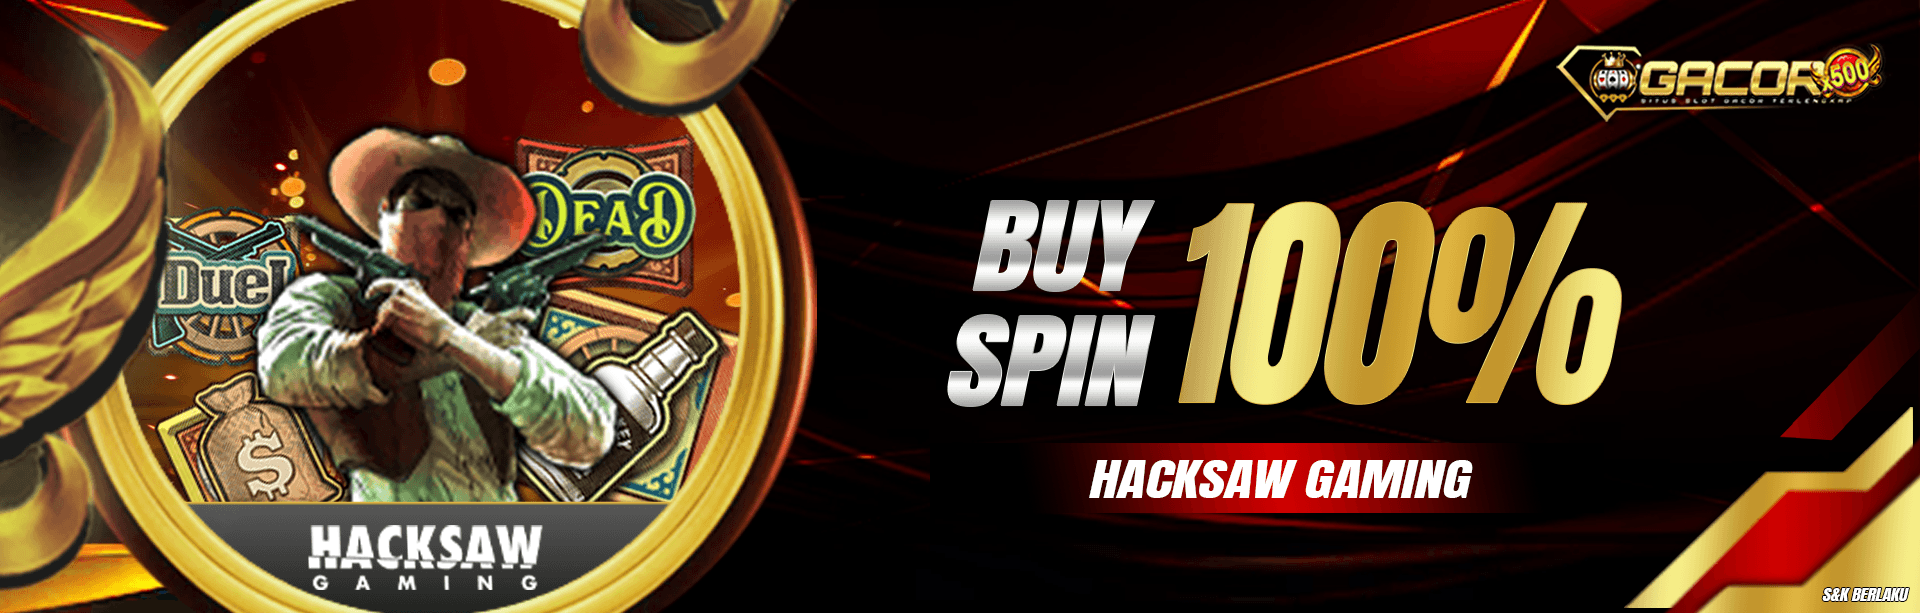 Promo Event Buy Spin Hackshaw Gaming 100%